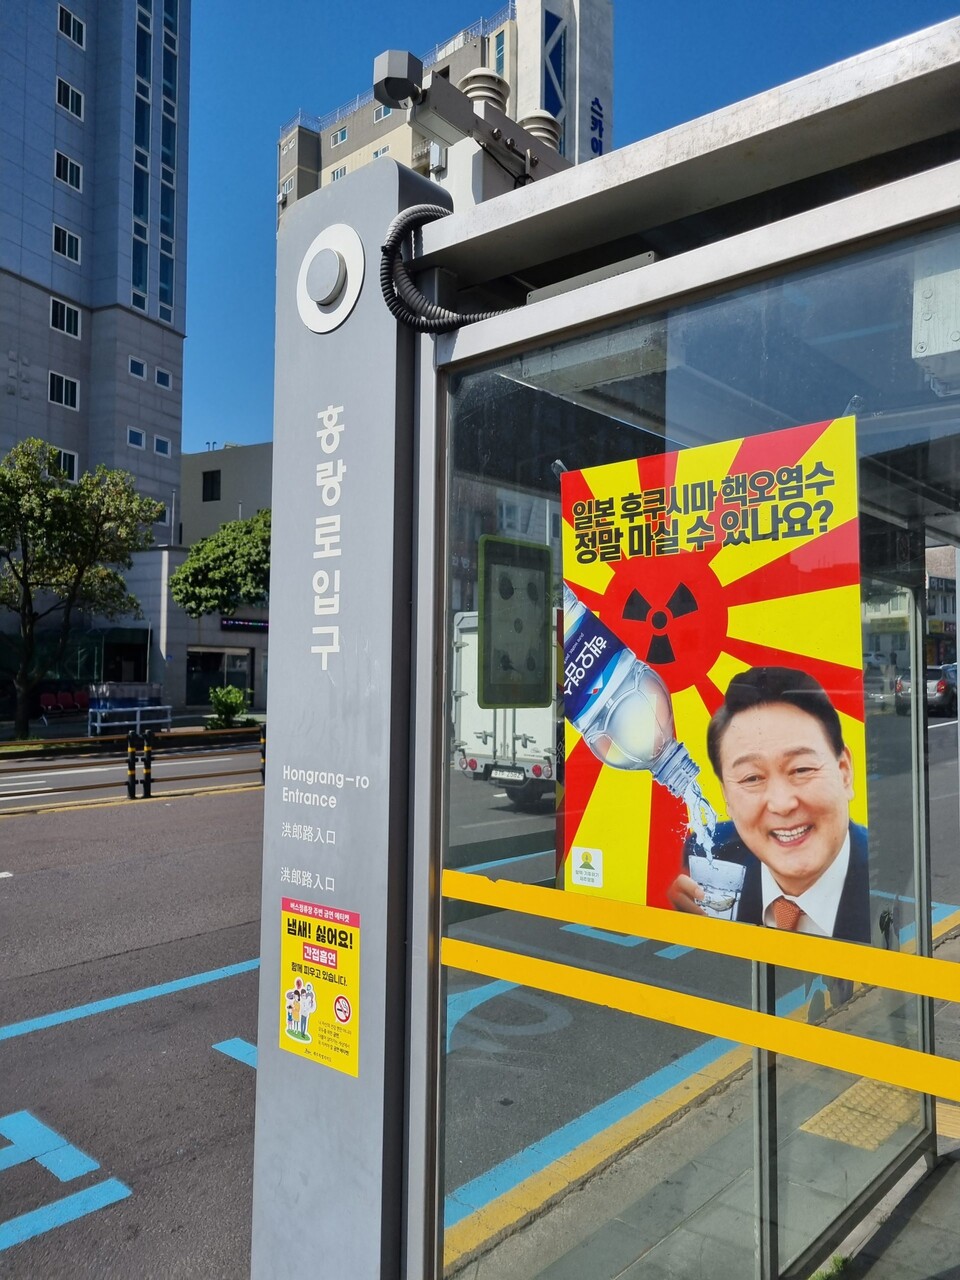 제주시 한 버스정류장에 윤석열 대통령이 일본 후쿠시마 핵 오염수를 마시려고 하는 모습이 담긴 합성 포스터가 부착돼 있다. [사진제공=제주환경운동연합]